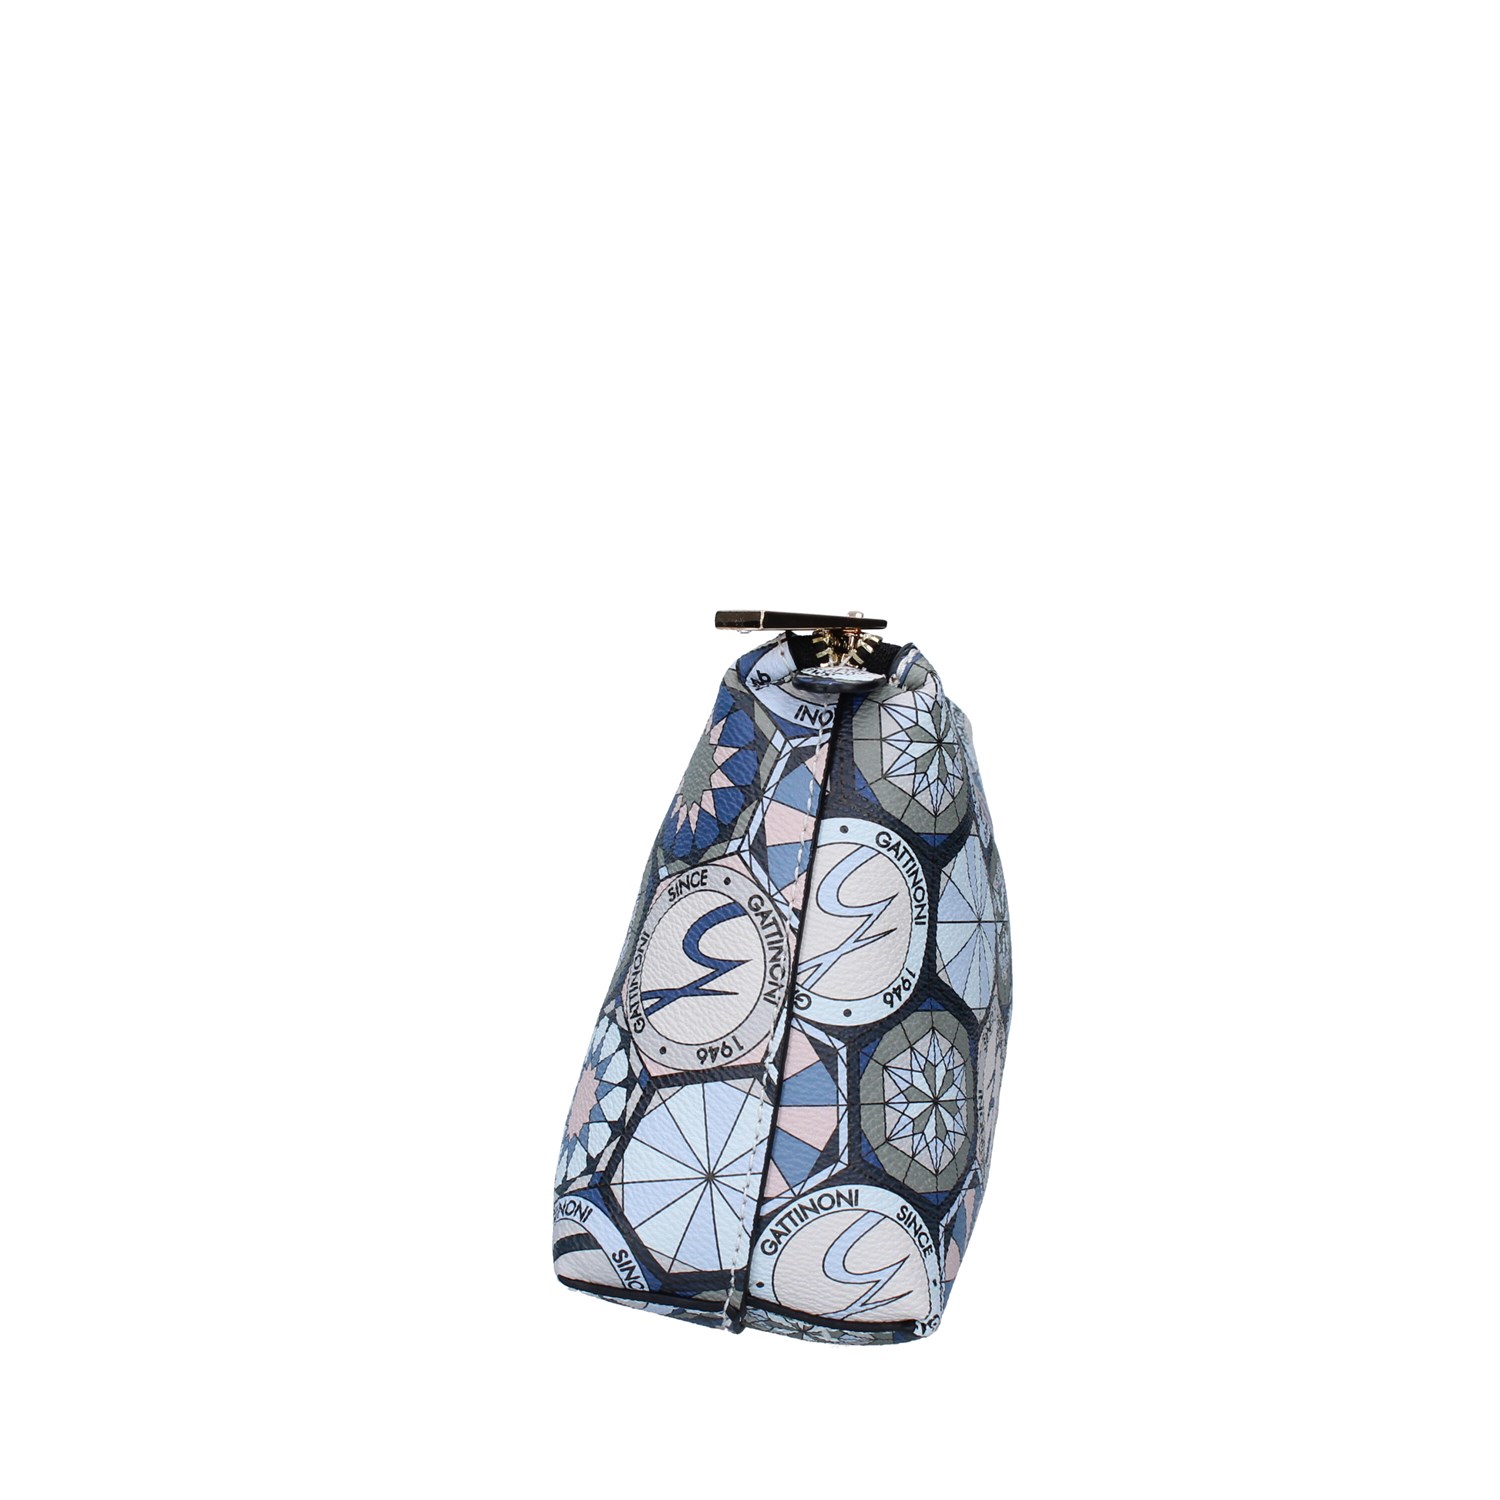 Gattinoni Roma Bags Accessories Beauty BLUE BINTD7643WW